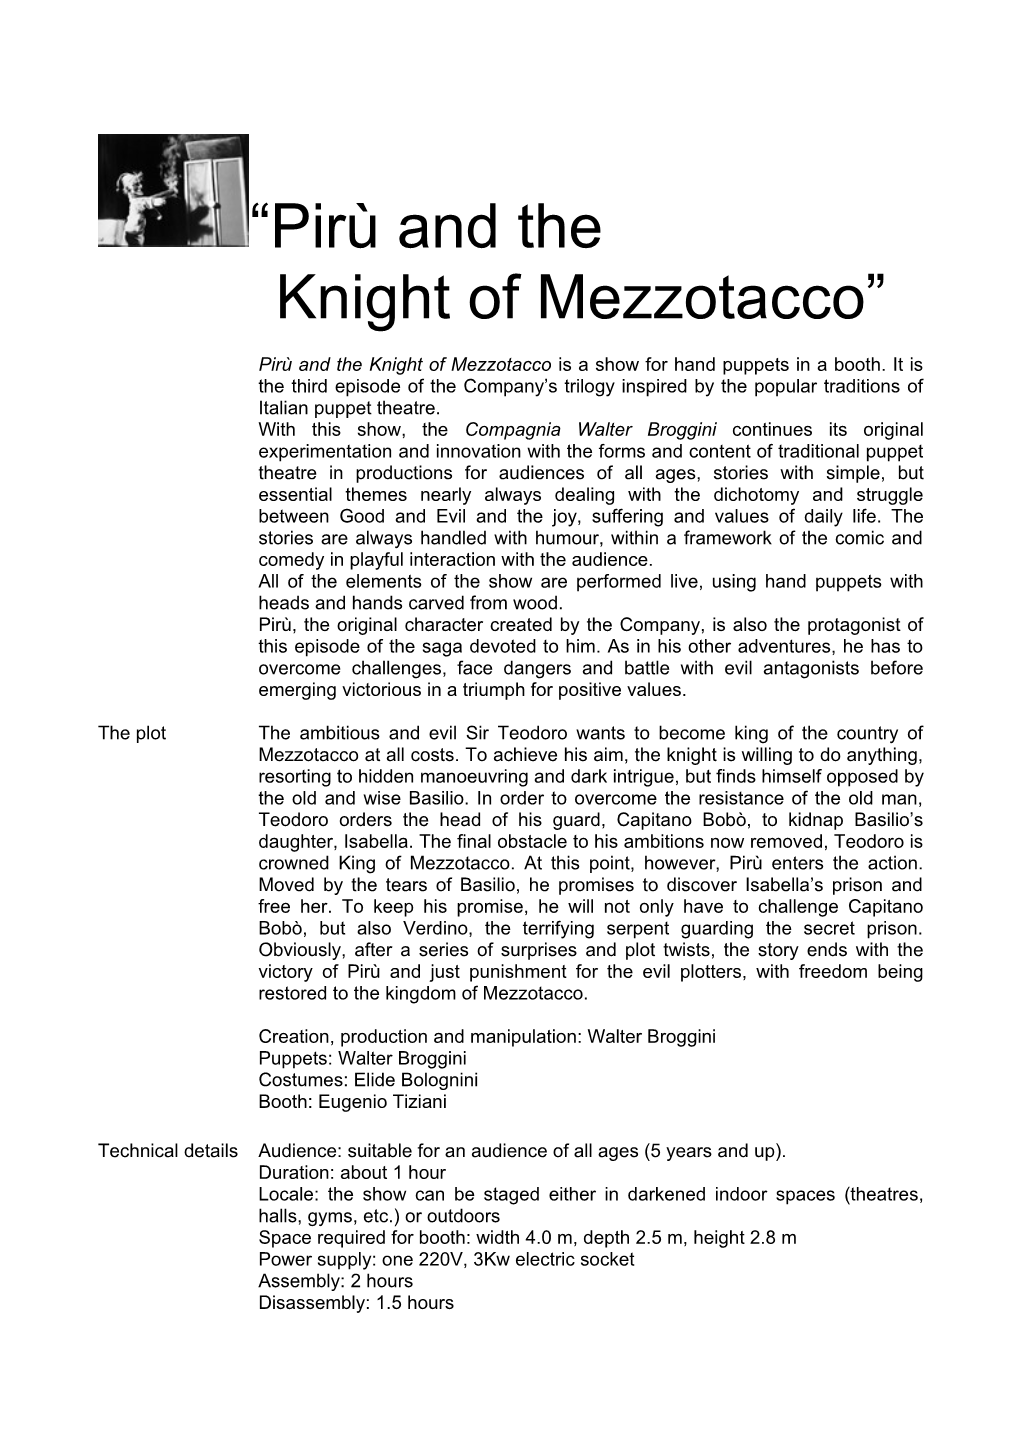 Knight of Mezzotacco